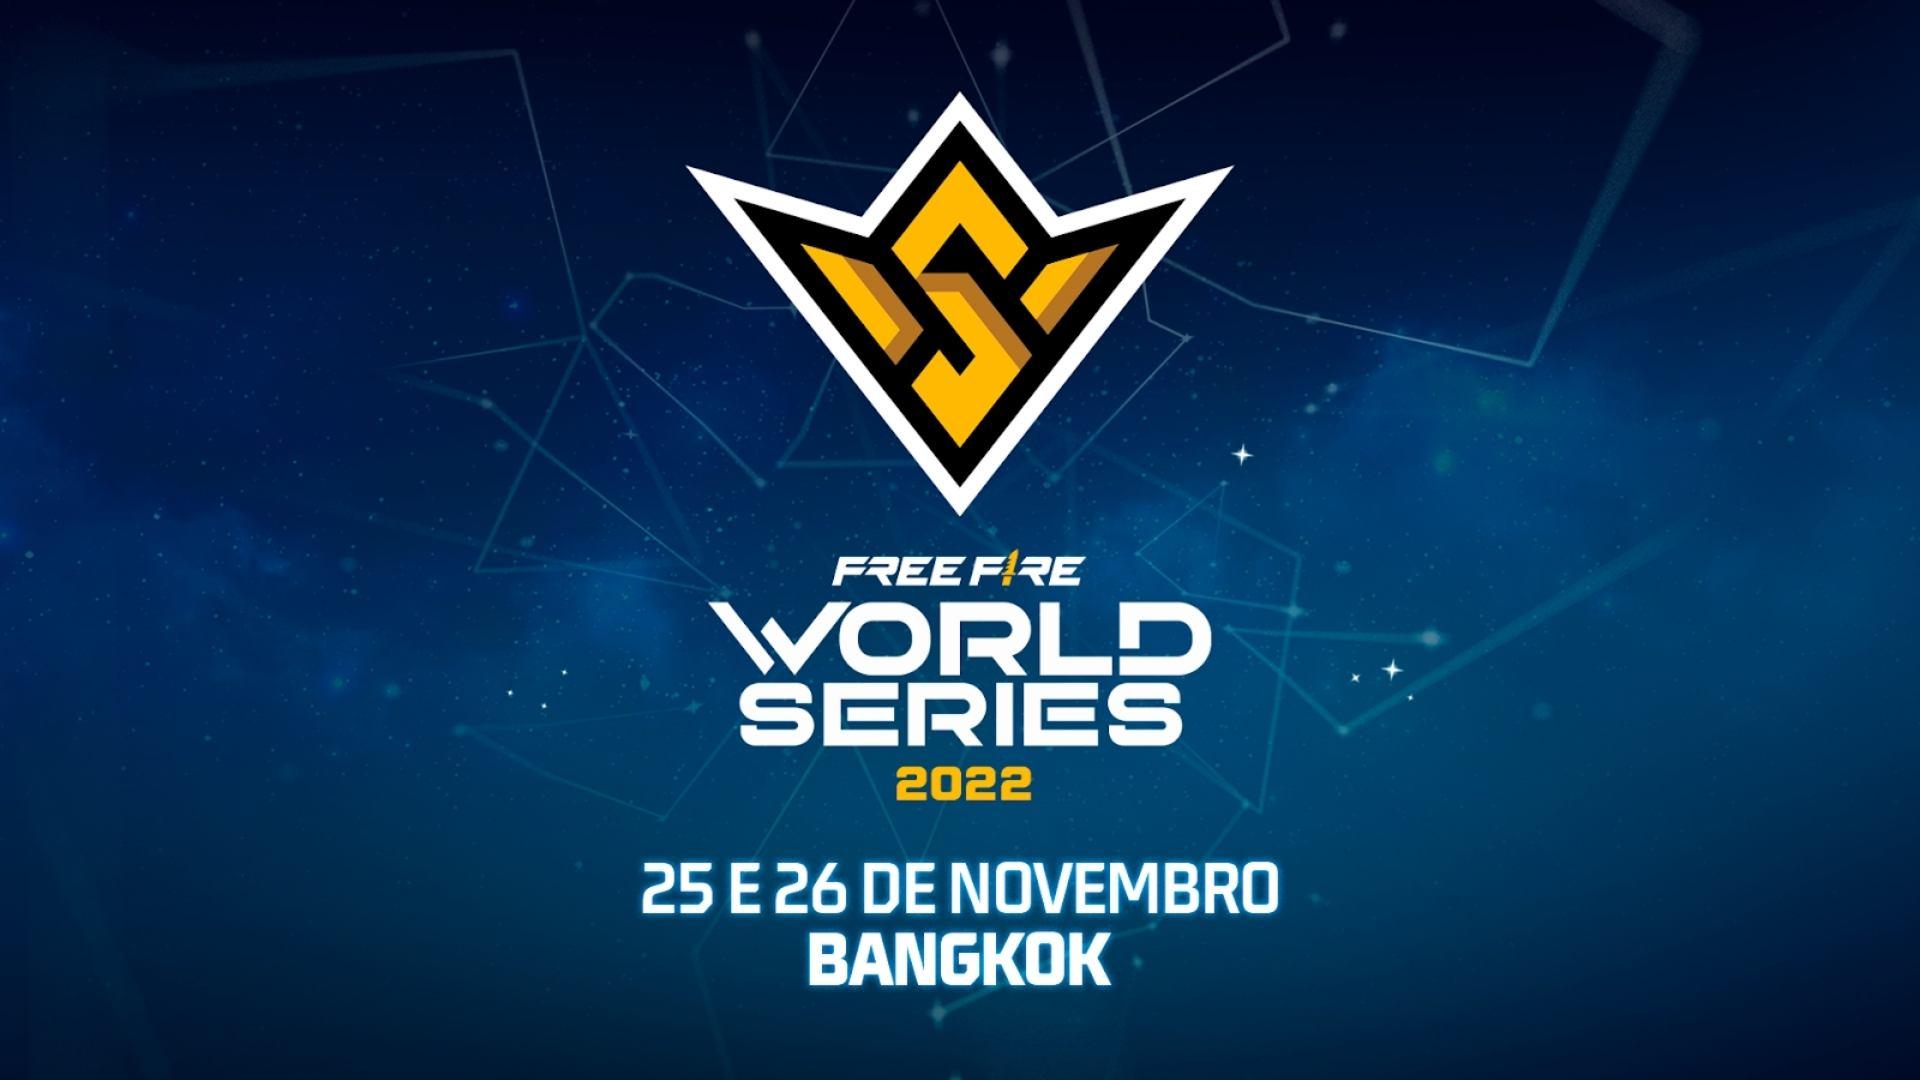 Mundial FF: Free Fire World Series 2022 acontecerá em novembro, na Tailândia